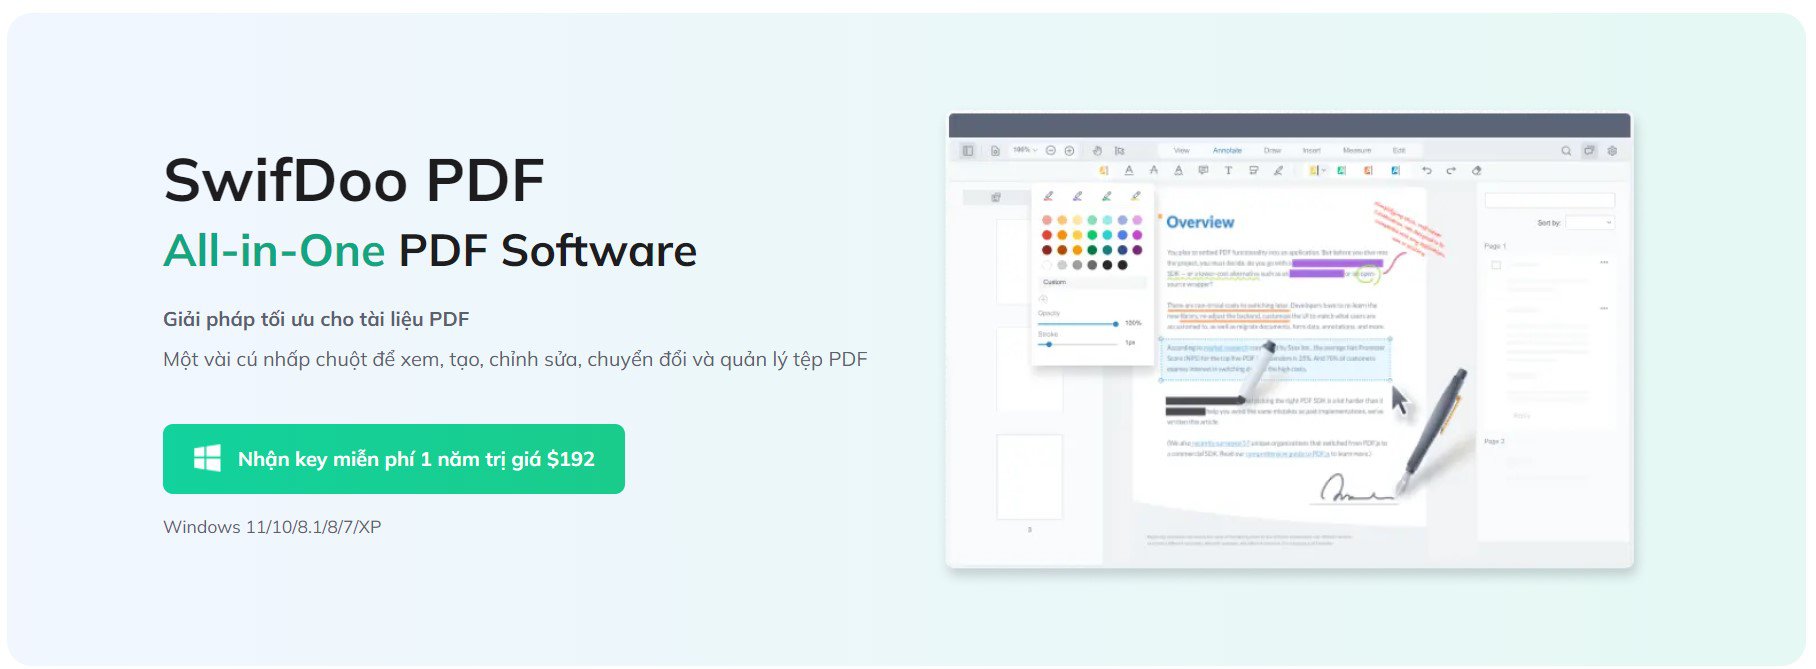 SwifDoo PDF Pro công cụ chuyên dụng chỉnh sửa file PDF